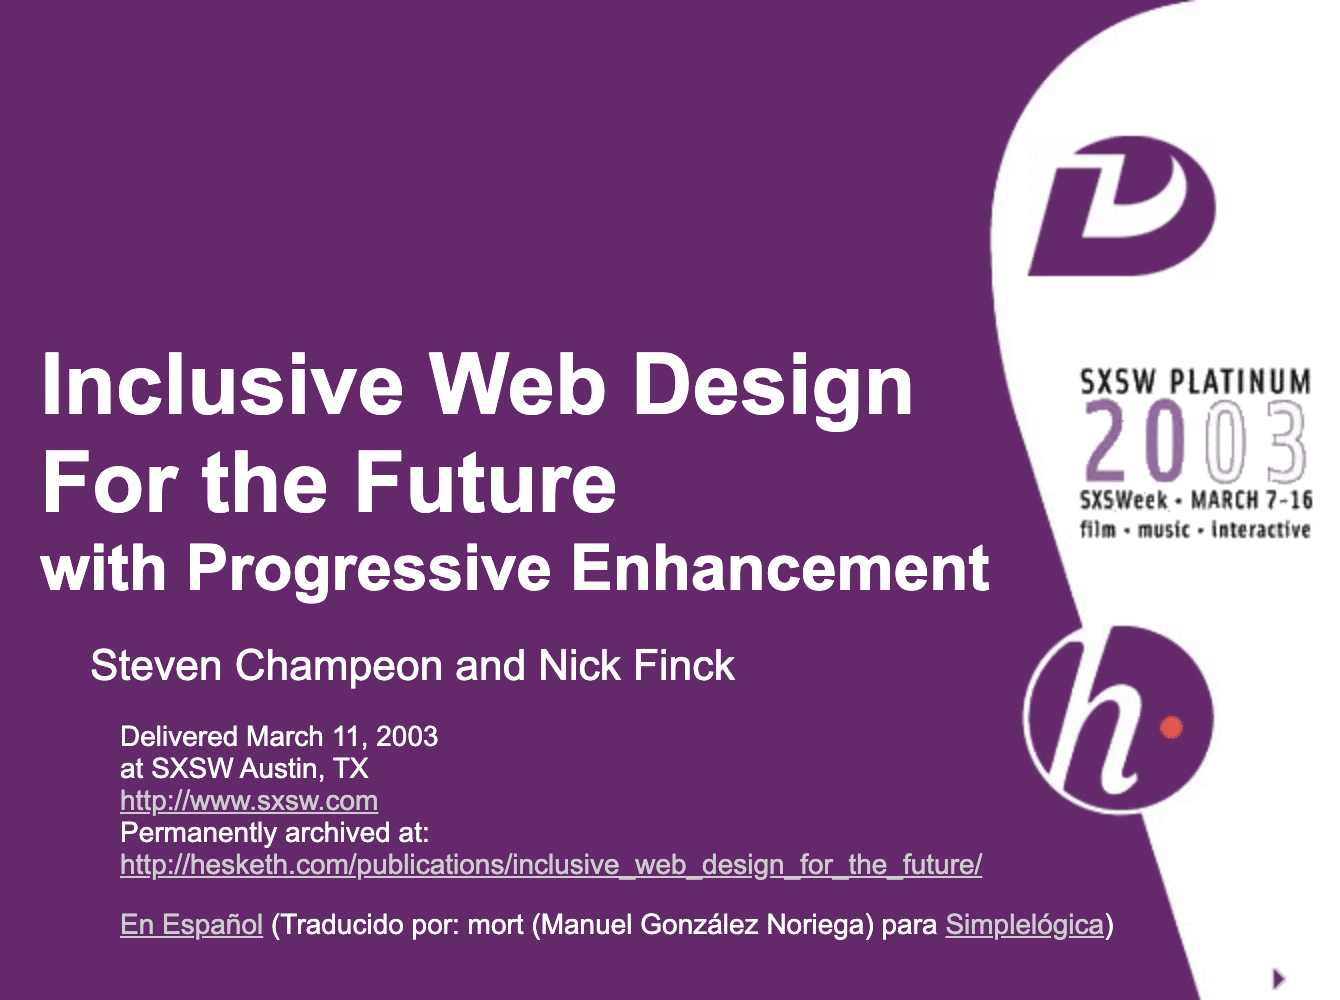 漸進型の機能強化により、将来を見据えた包括的なウェブデザインを実現。Finck と Champeon の元のプレゼンテーションからのタイトルのスライド。